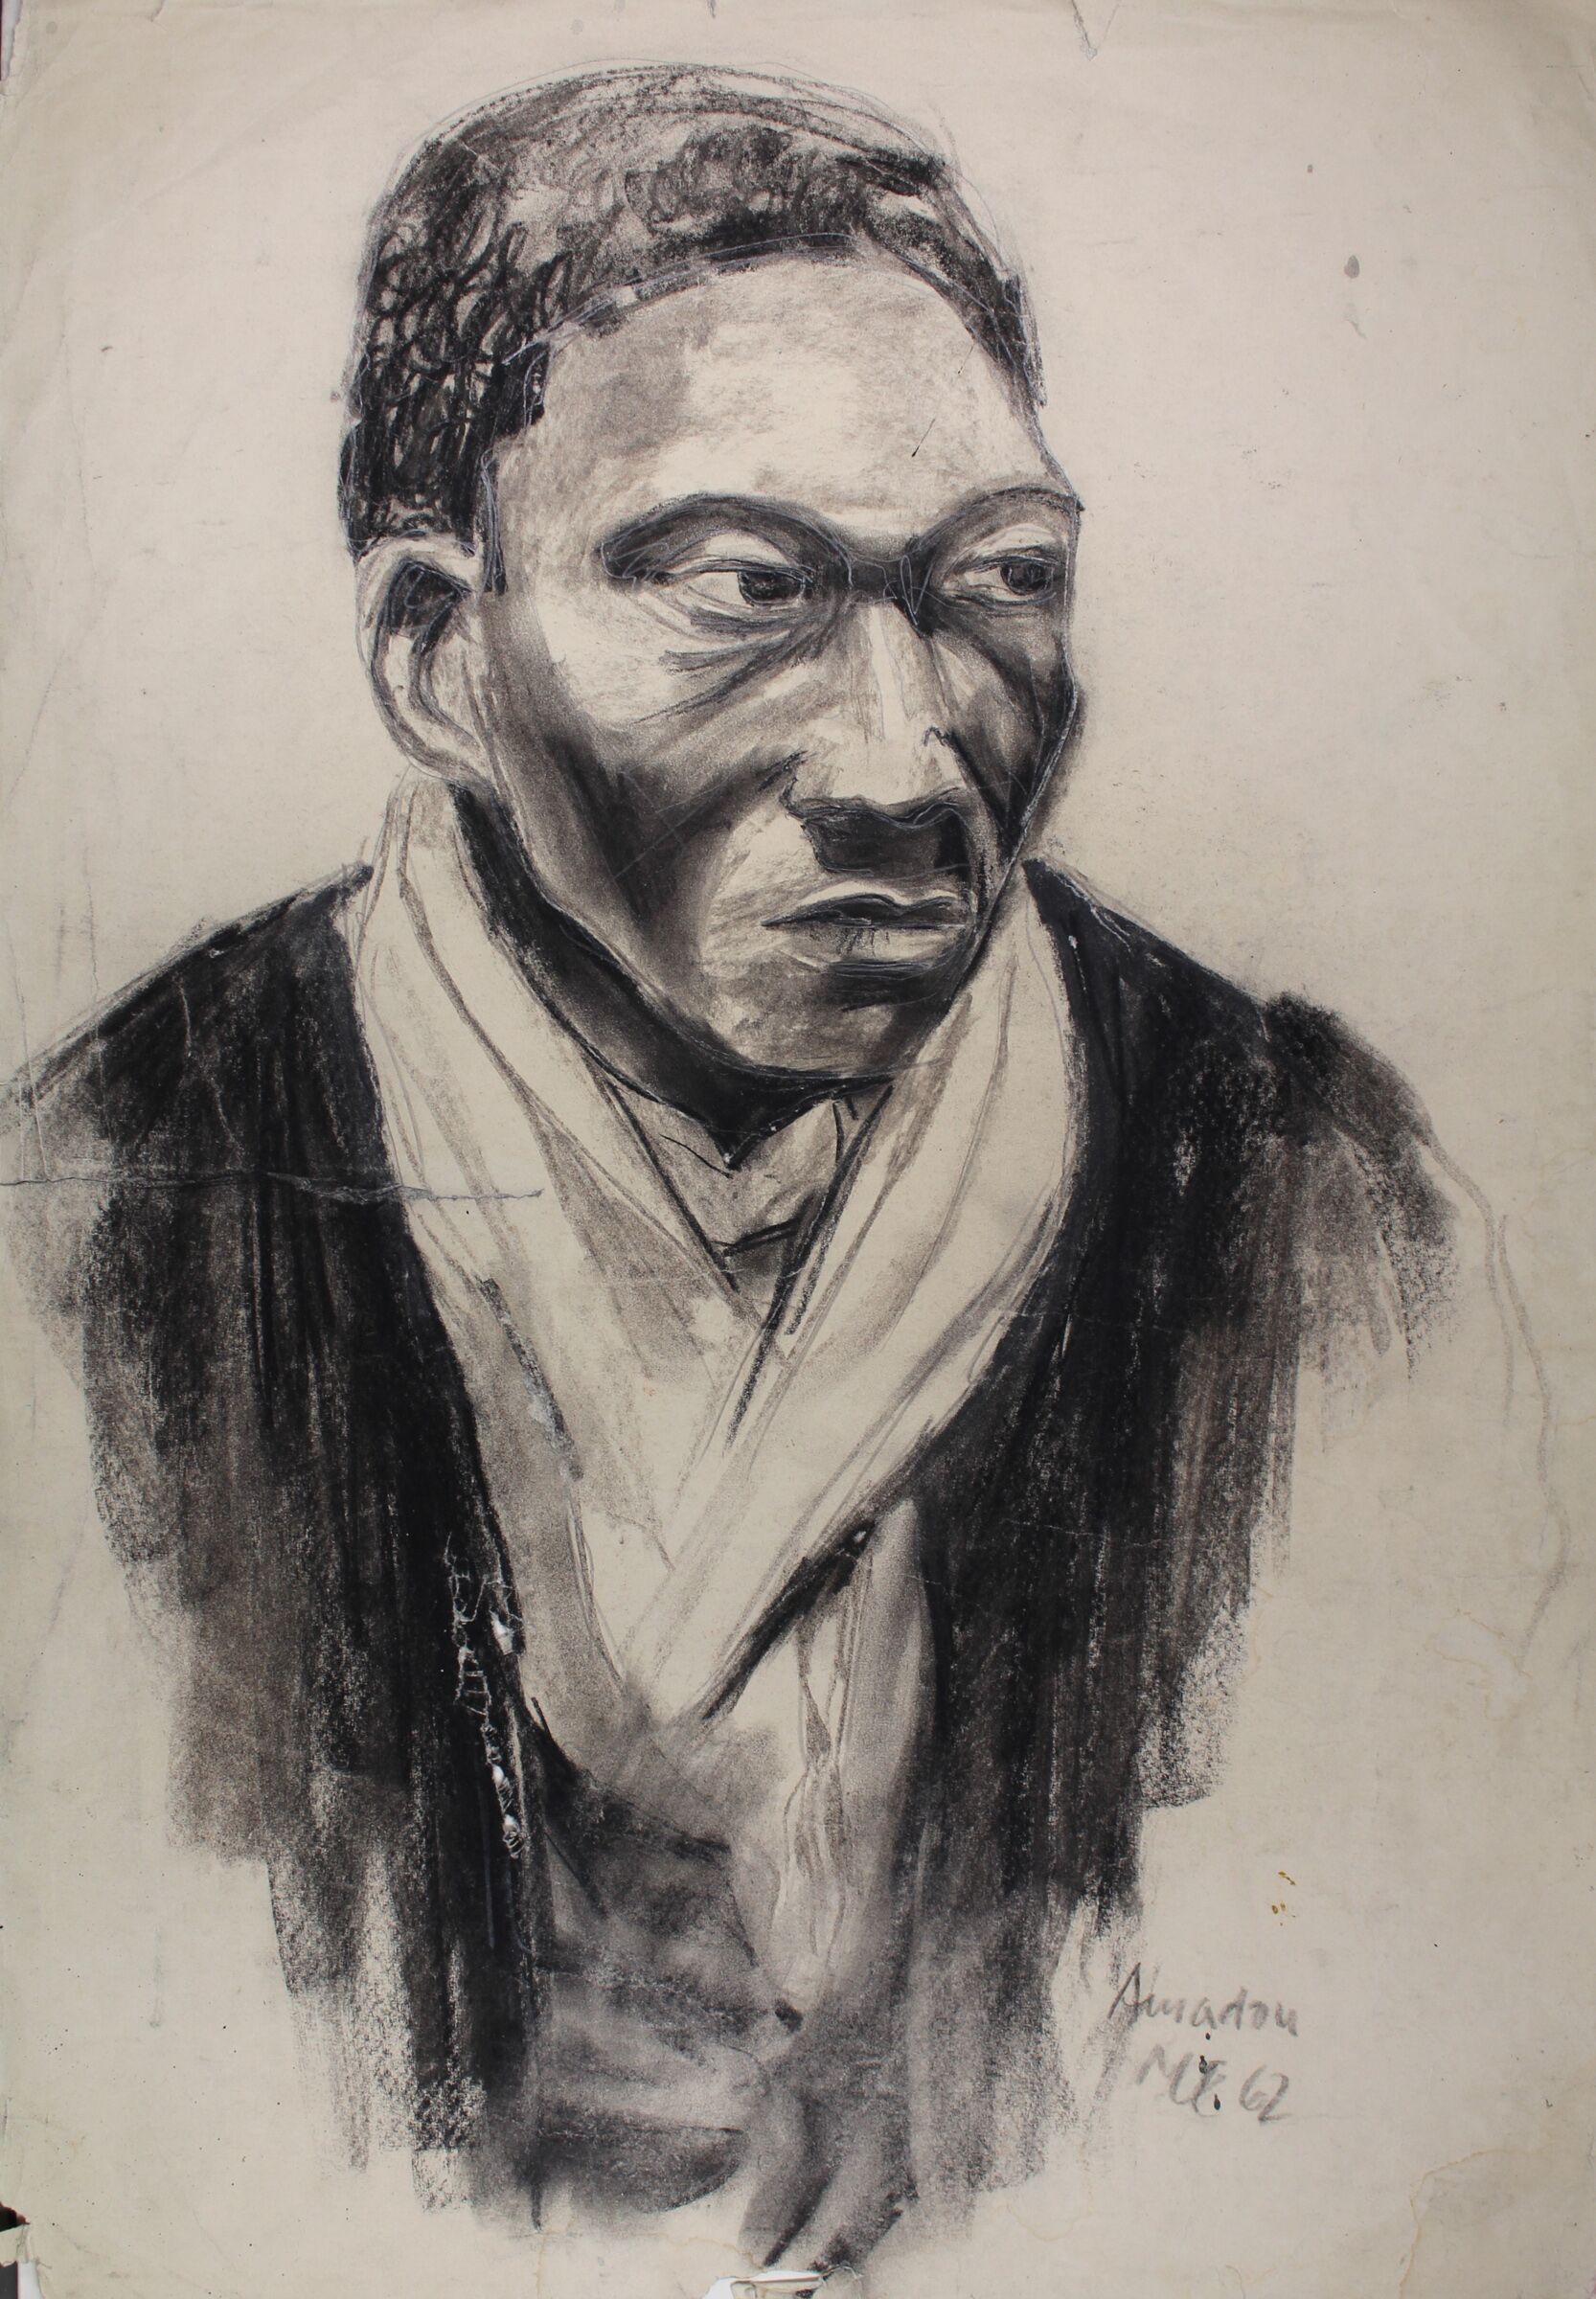 Die Kohlezeichnung zeigt einen vermutlich afrikanischstämmigen jungen Mann, der ernst leicht nach rechts blickt. Er hat ein helles Tuch umhängen und trägt ein dunkles Gewand.